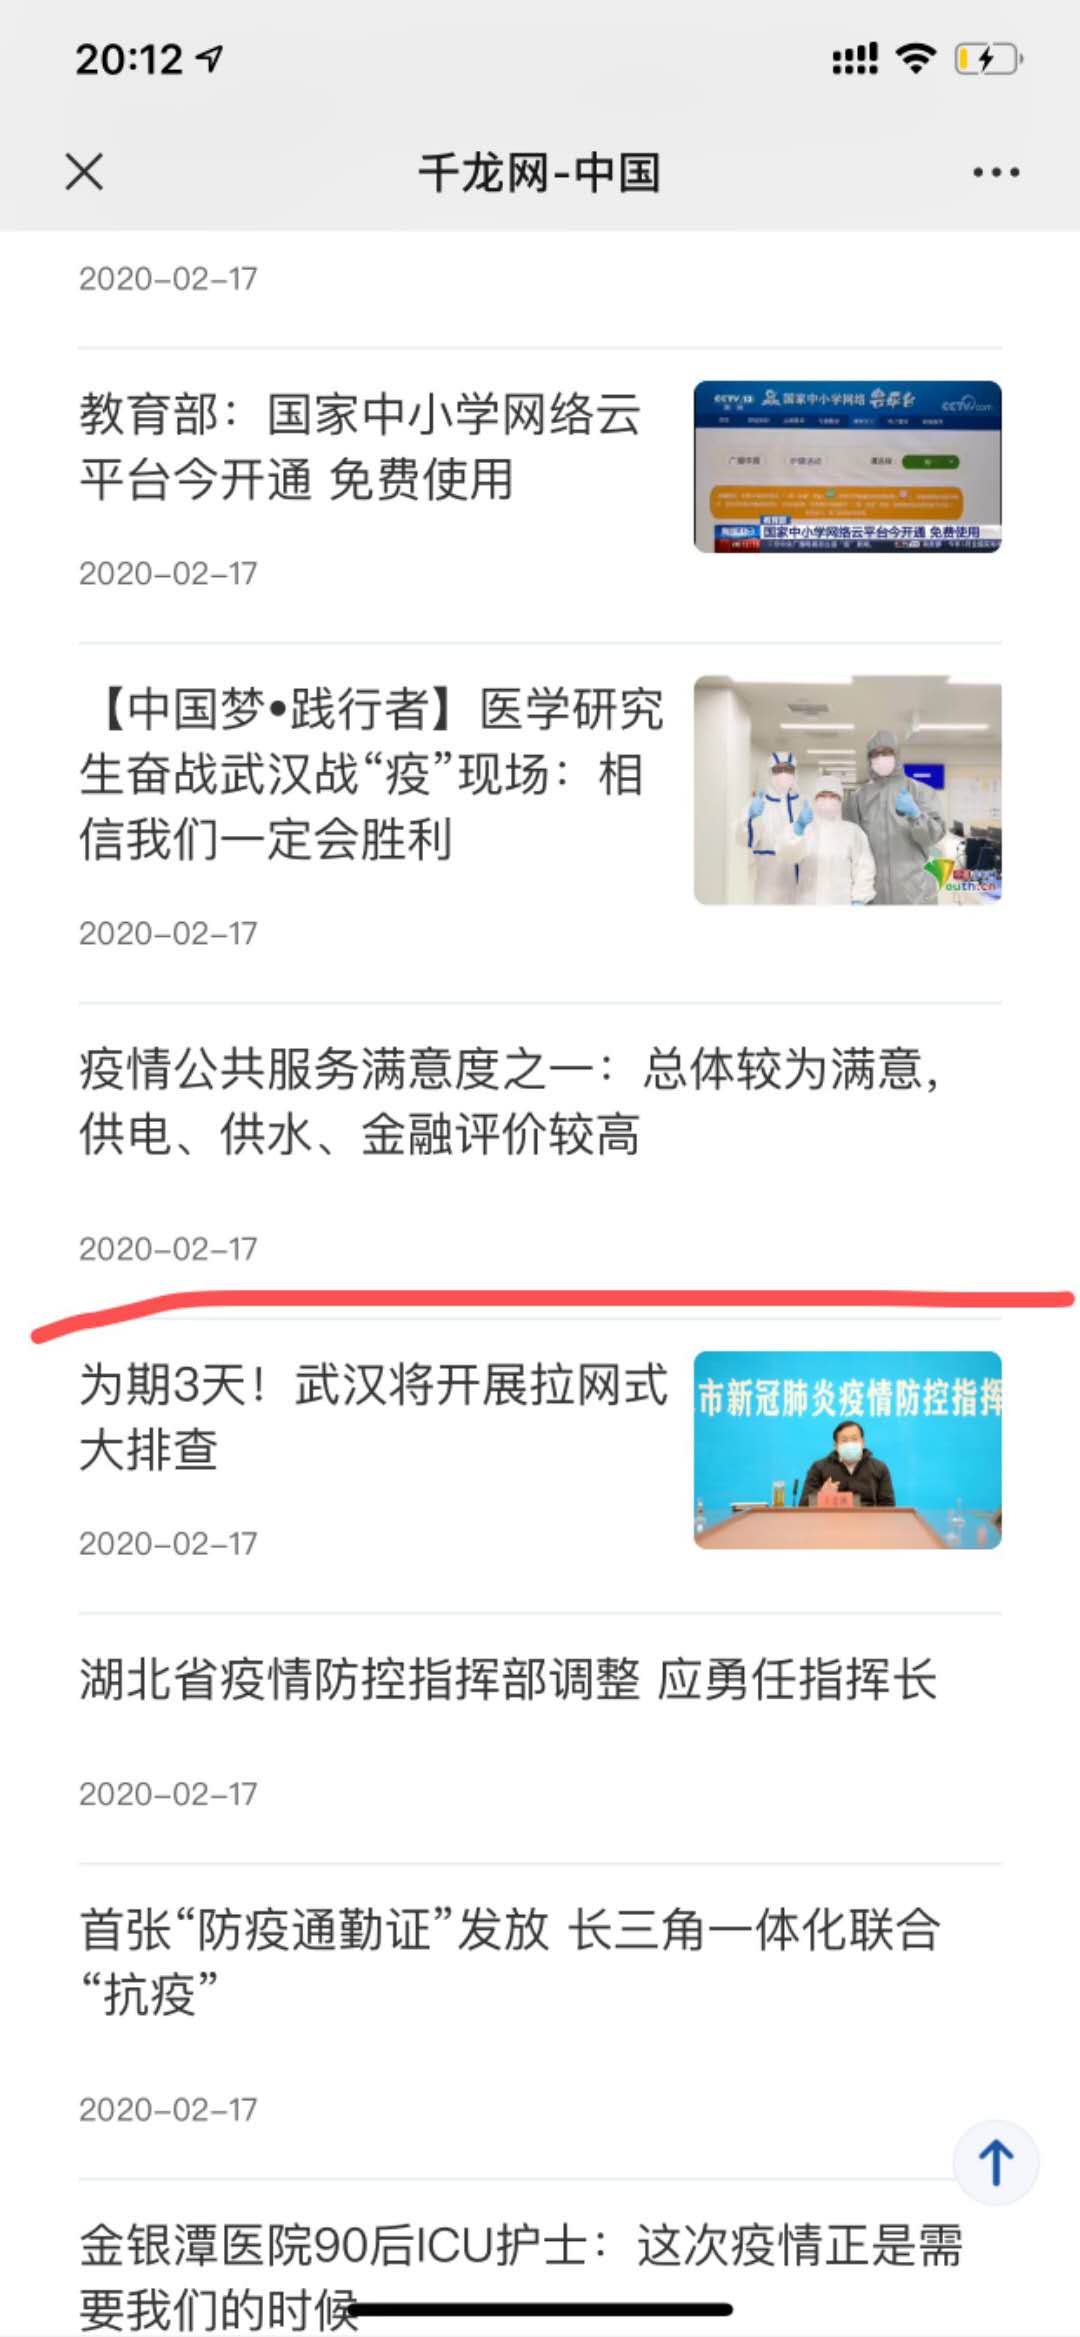 清研智库：疫情公共服务满意度系列调查受到媒体广泛关注